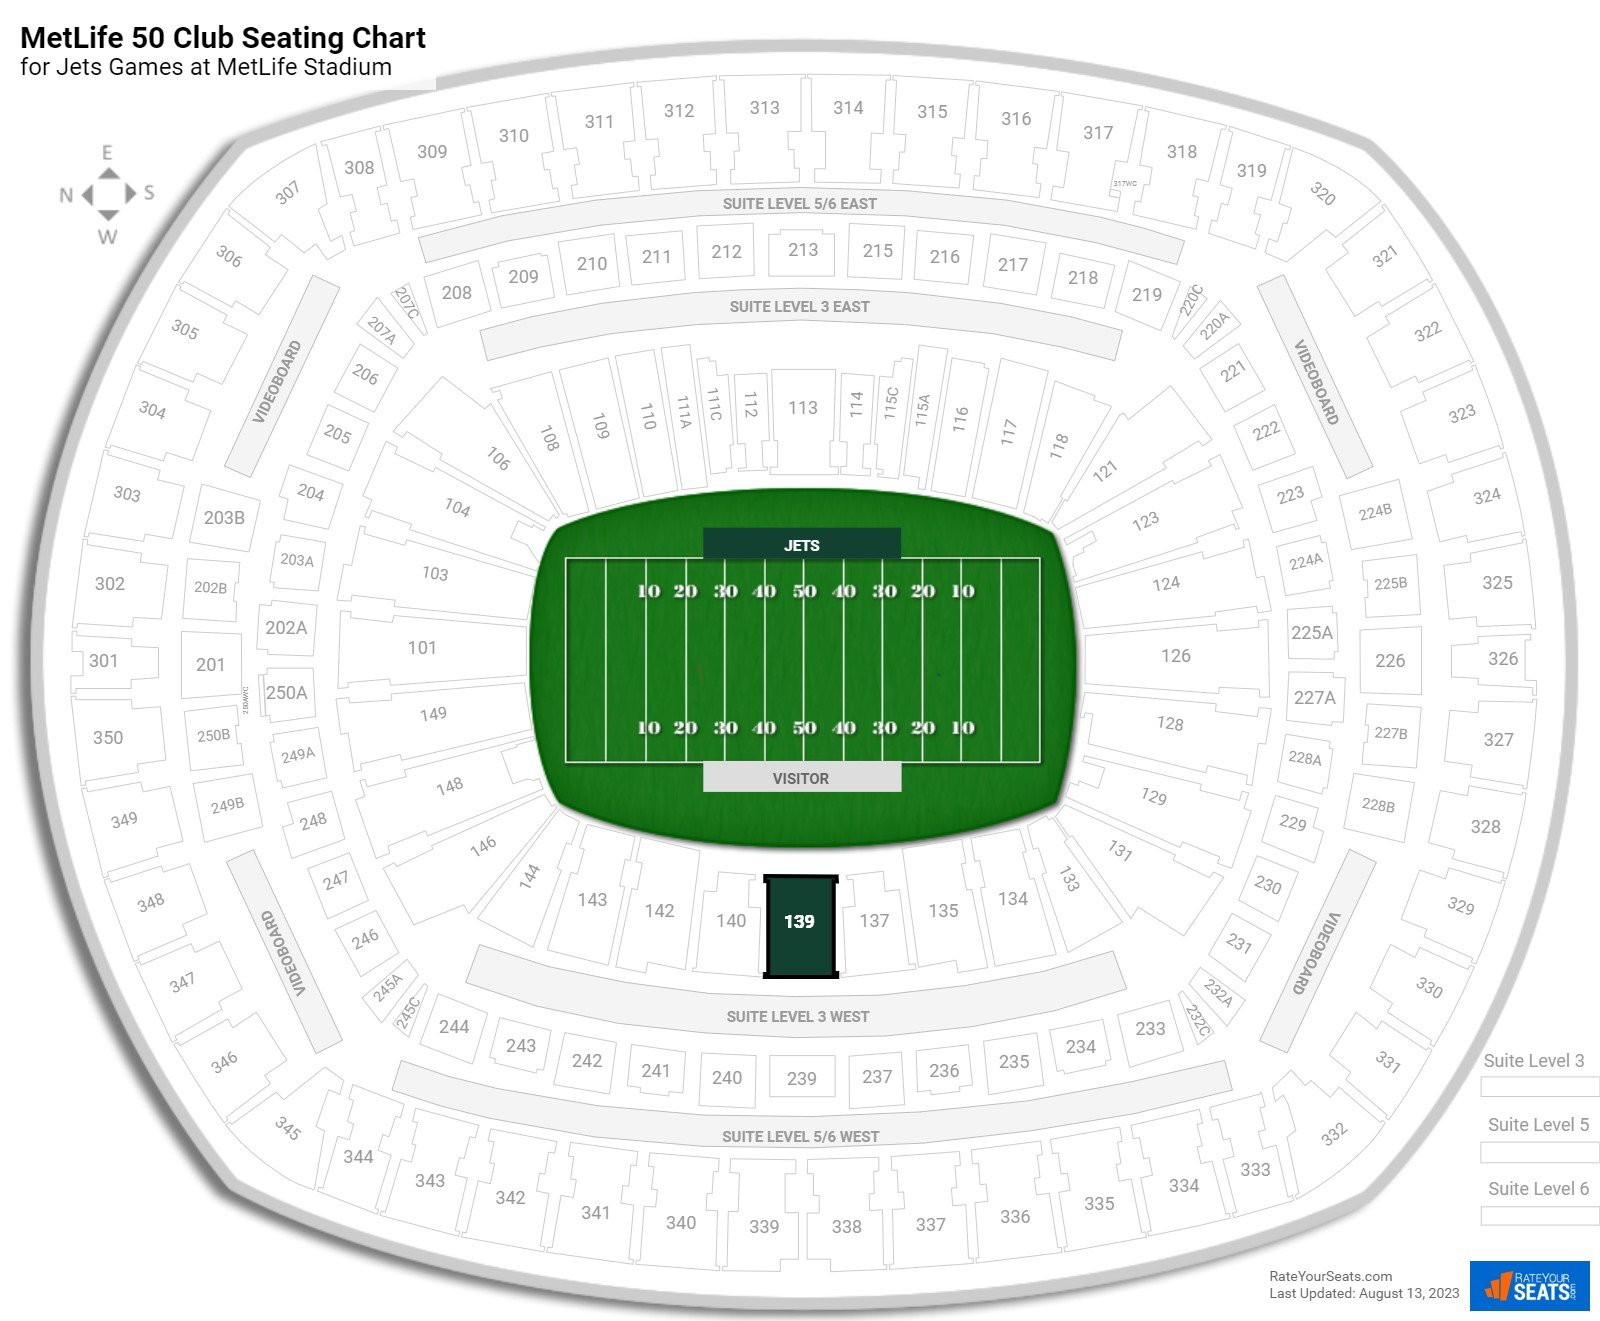 Jets MetLife 50 Club Seating Chart at MetLife Stadium